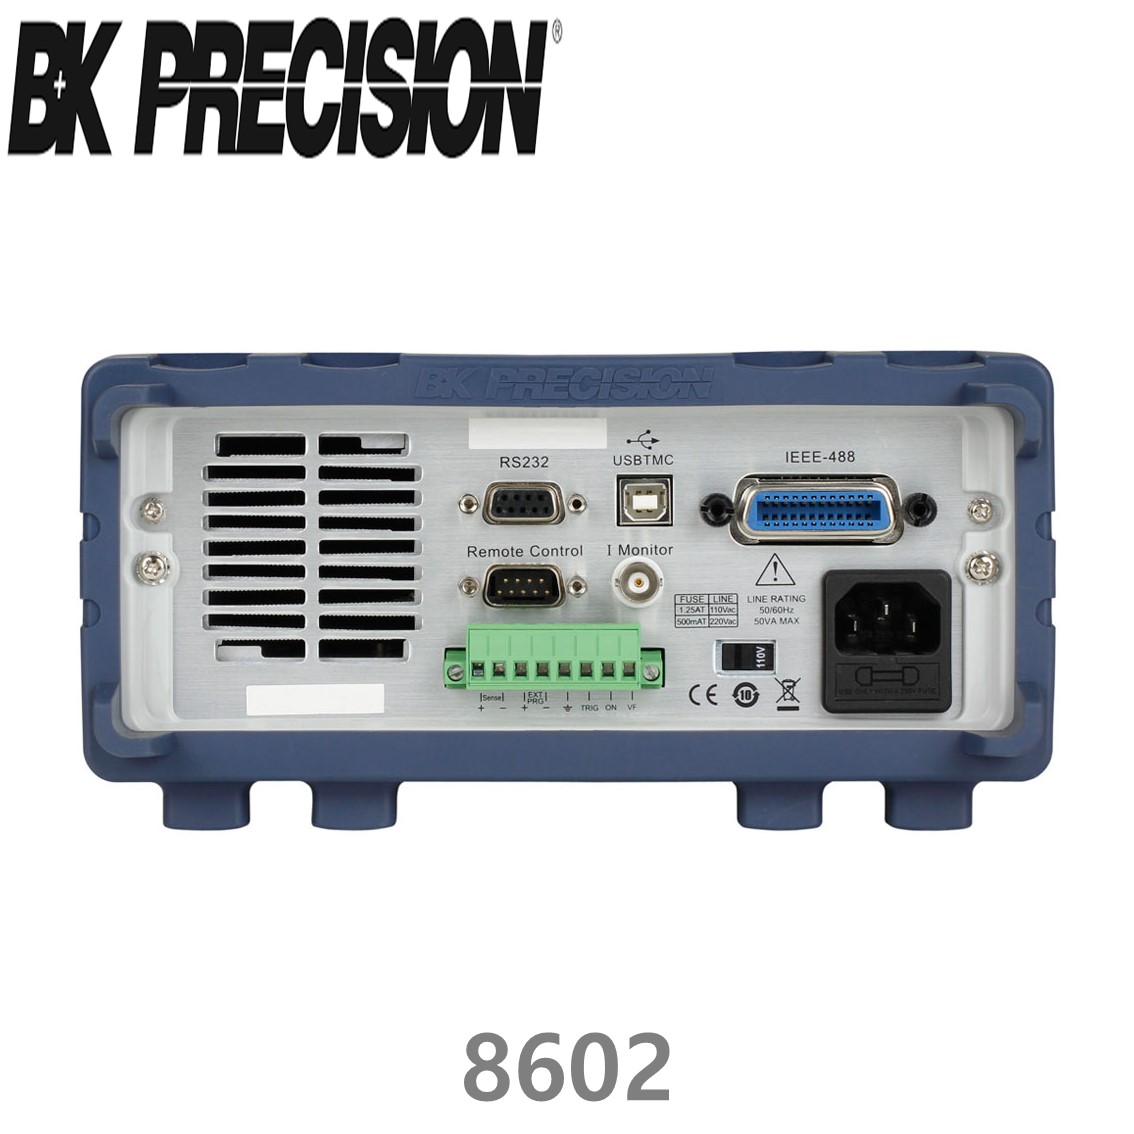 [ BK PRECISION ] BK 8602, 250W Programmable DC Electronic Load, 프로그래머블 DC 전자로드, B&K 8602